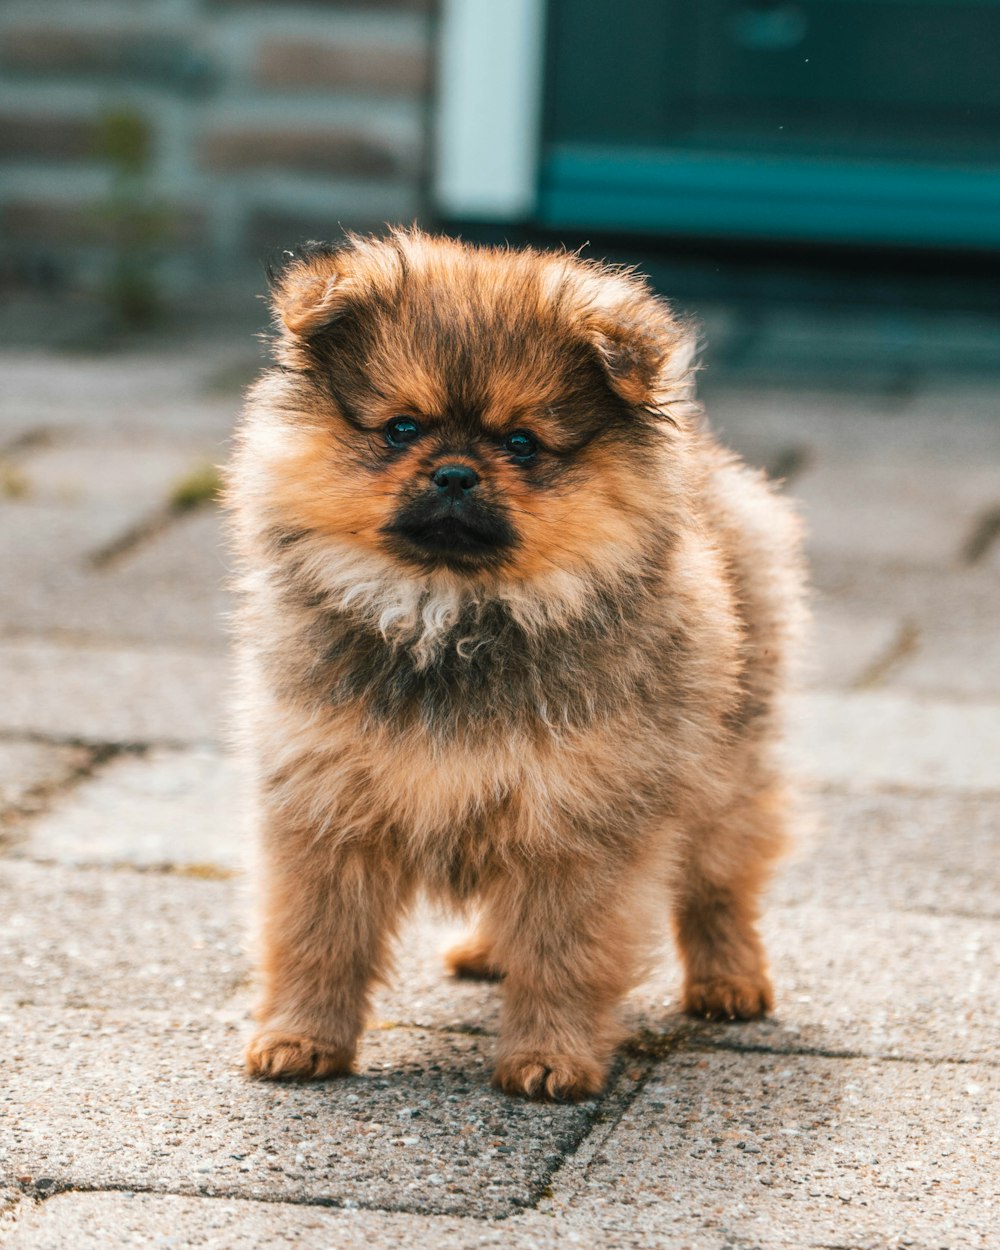 a small dog sitting on a sidewalk